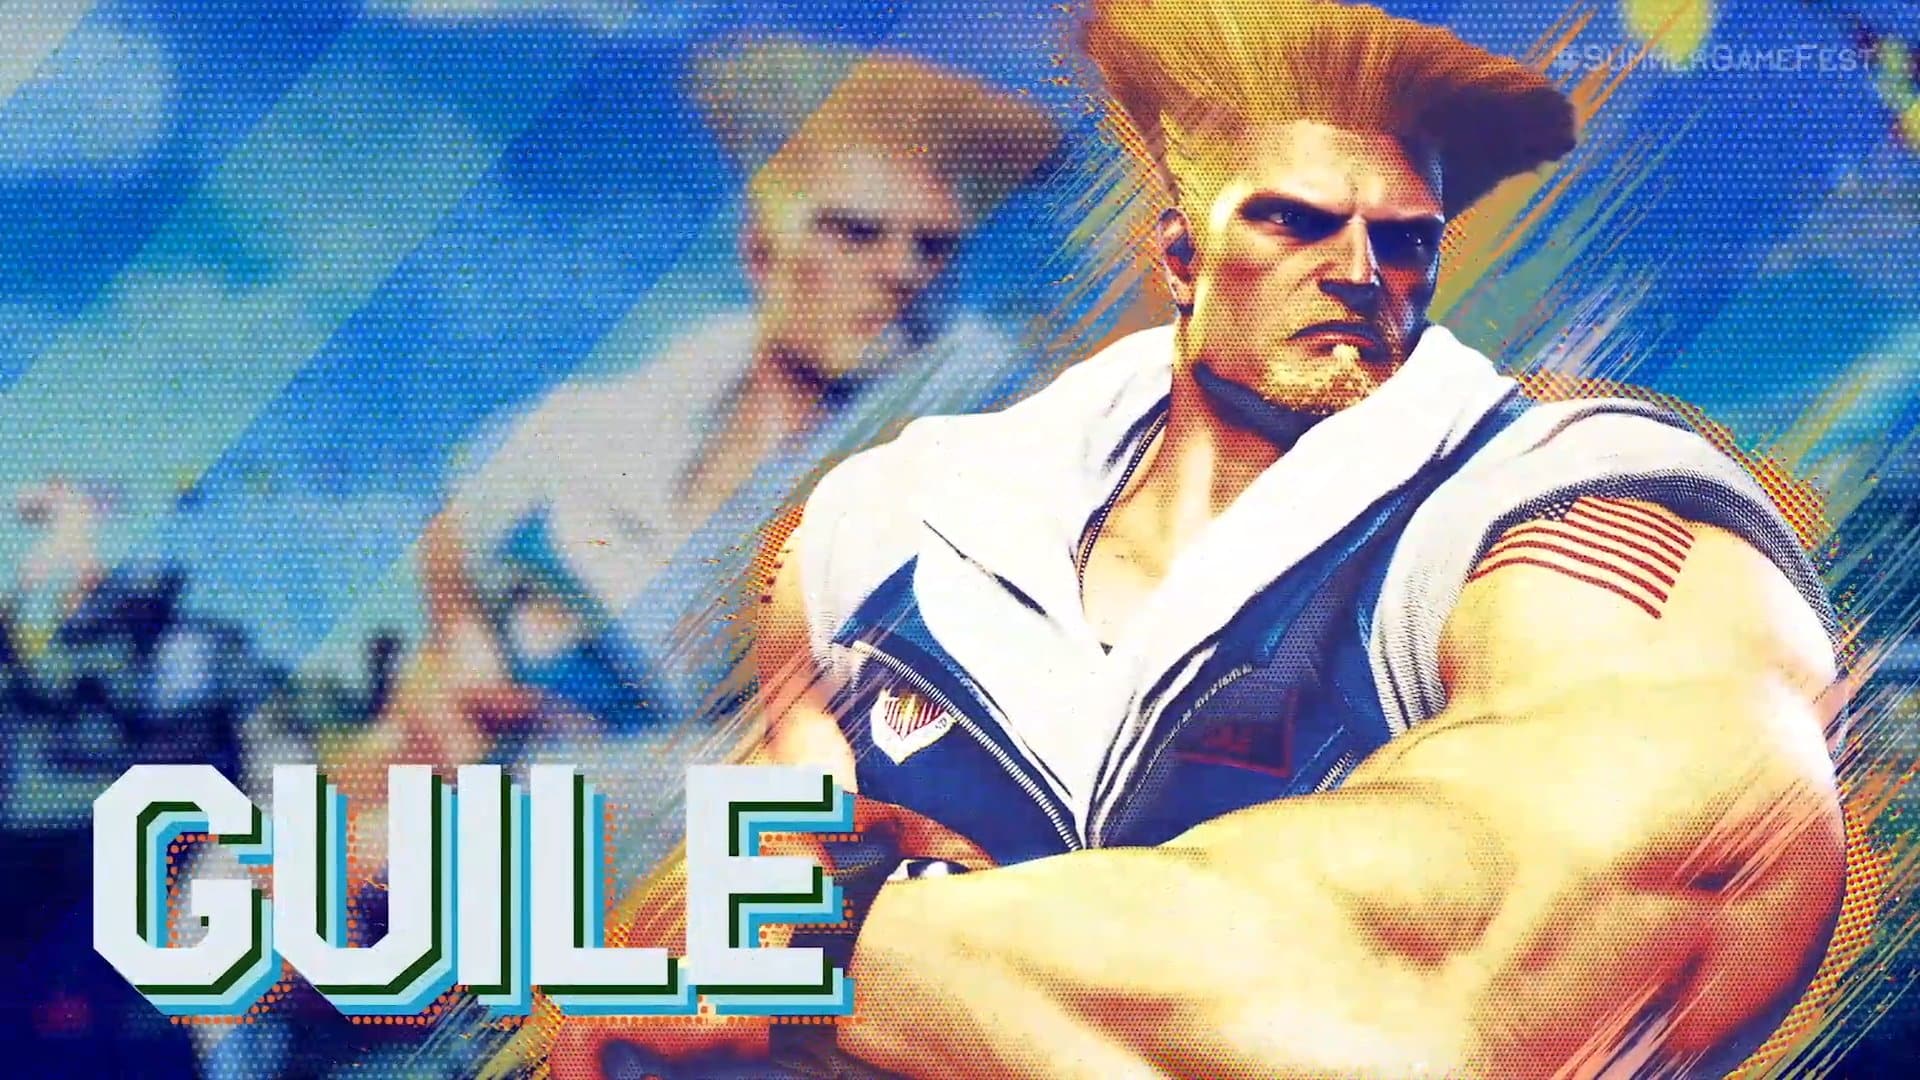 Street Fighter V - Guile Trailer